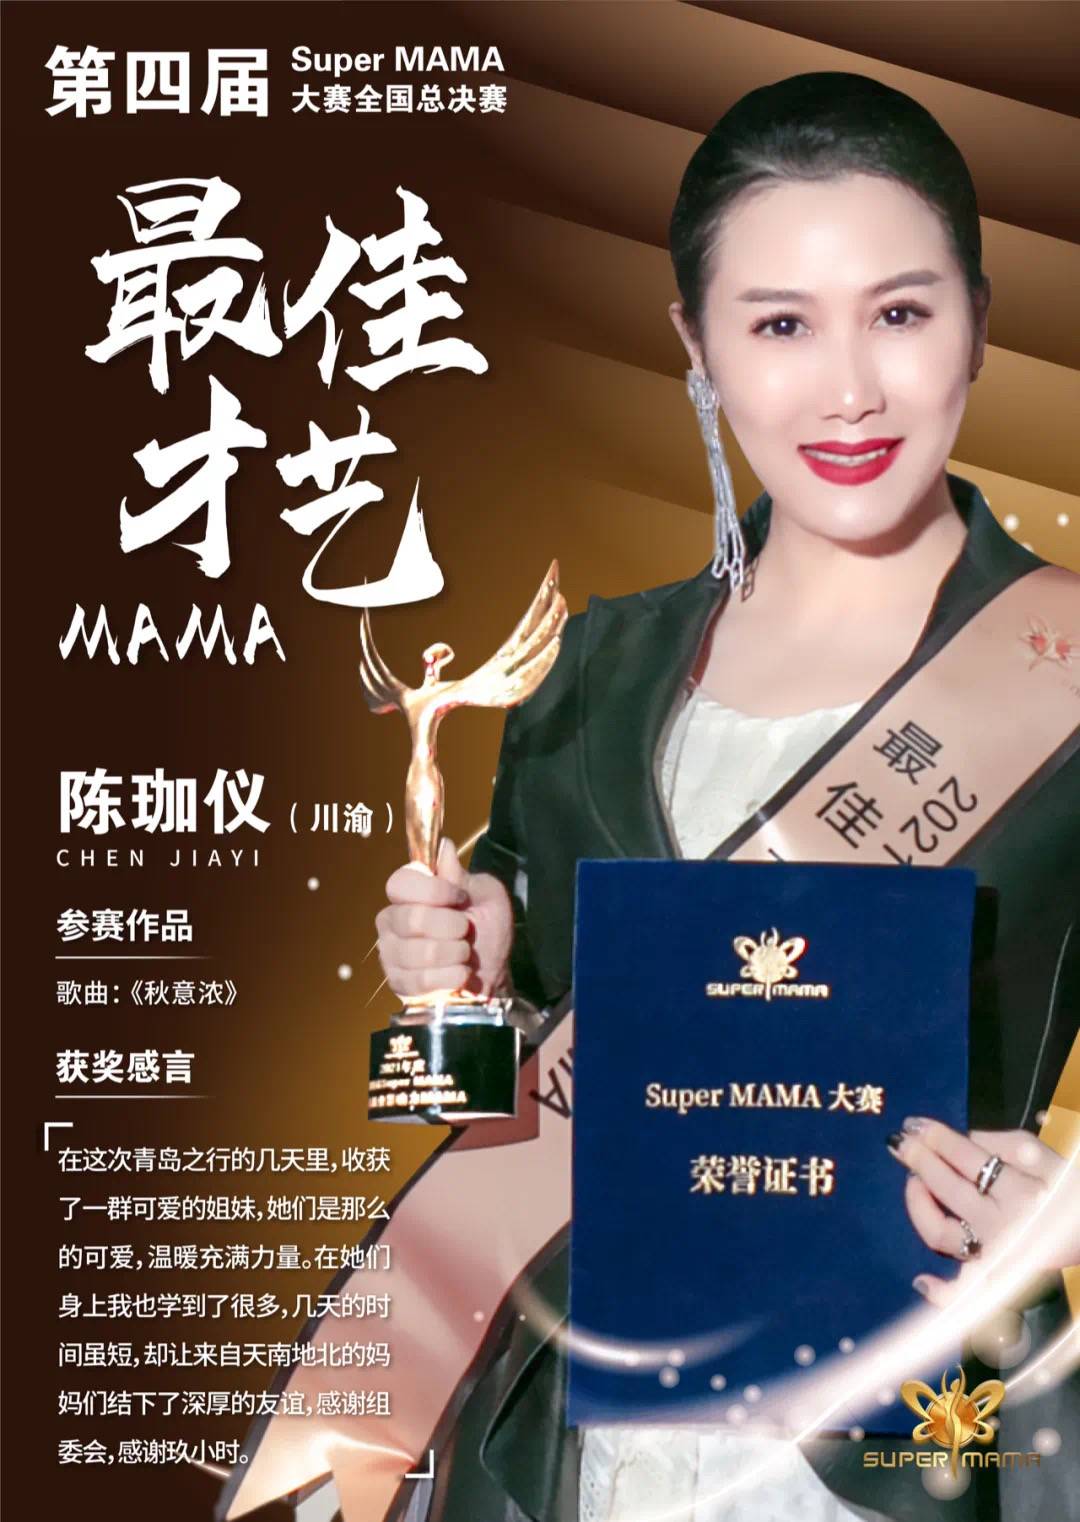 Super MAMA大赛最佳才艺妈妈陈珈仪：在比赛中参透勇敢做自己